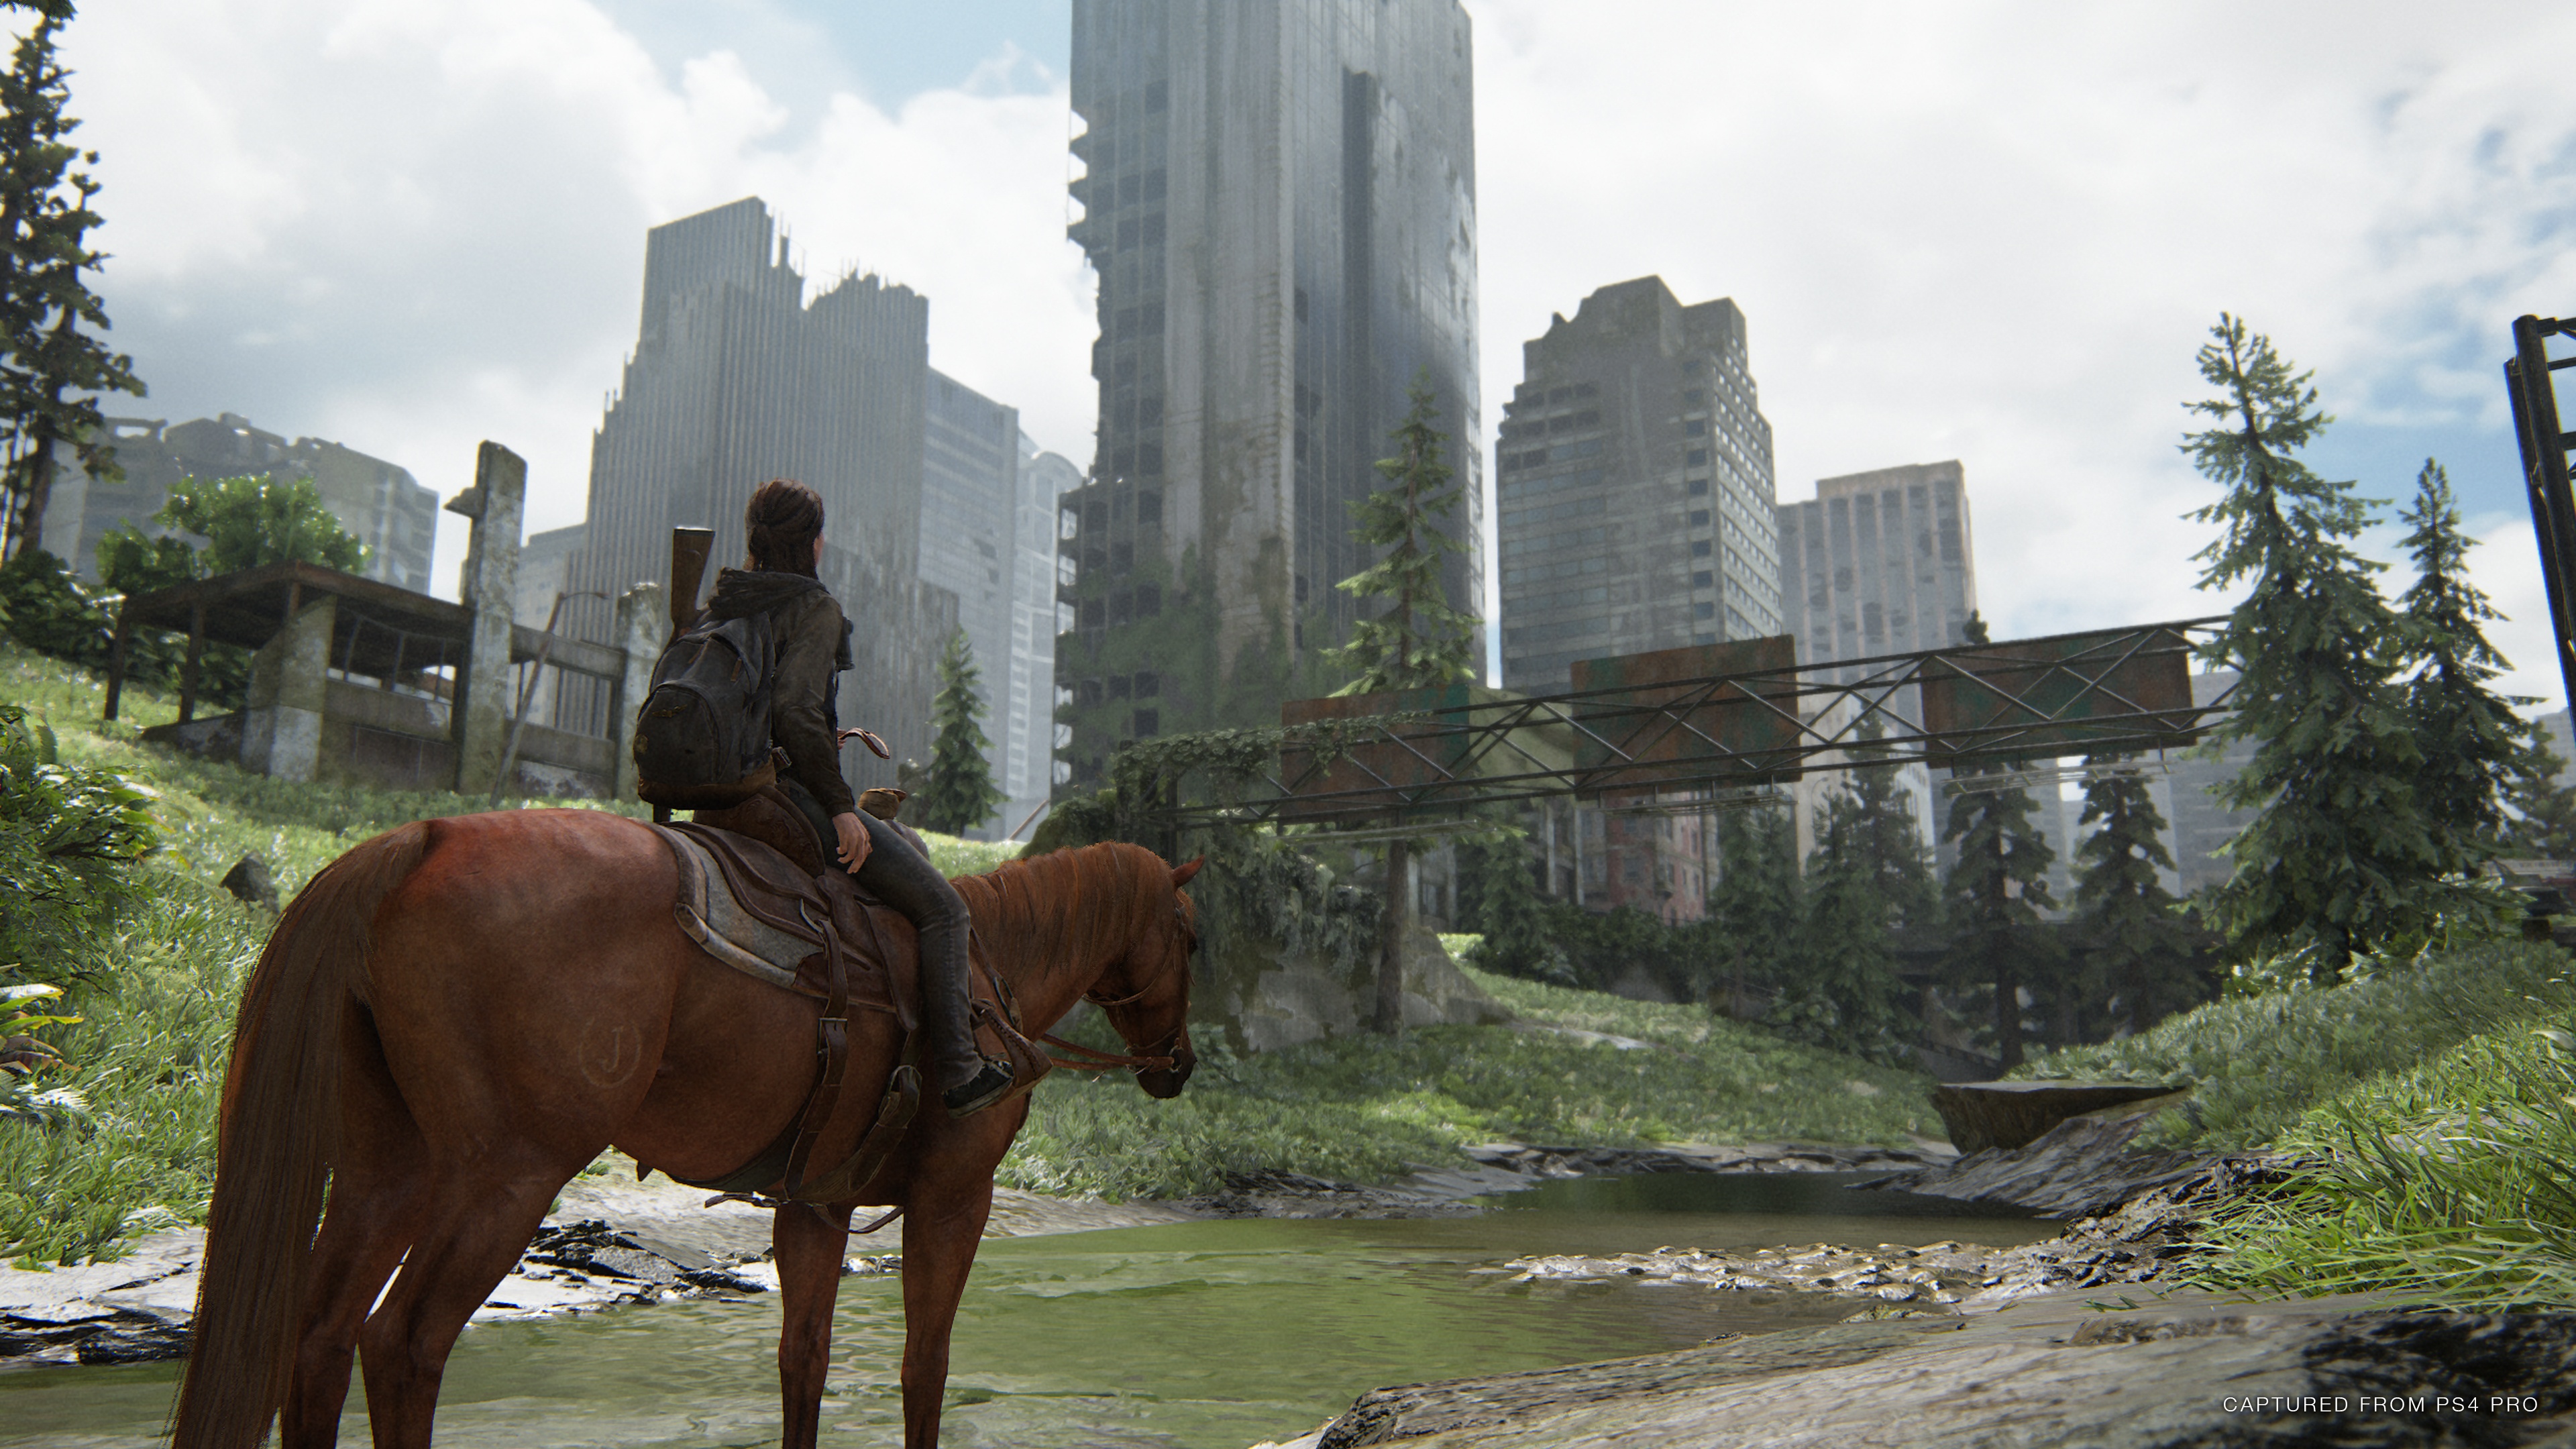 Neil Druckmann von The Last of Us 2 spricht über den Wechsel zur PS5